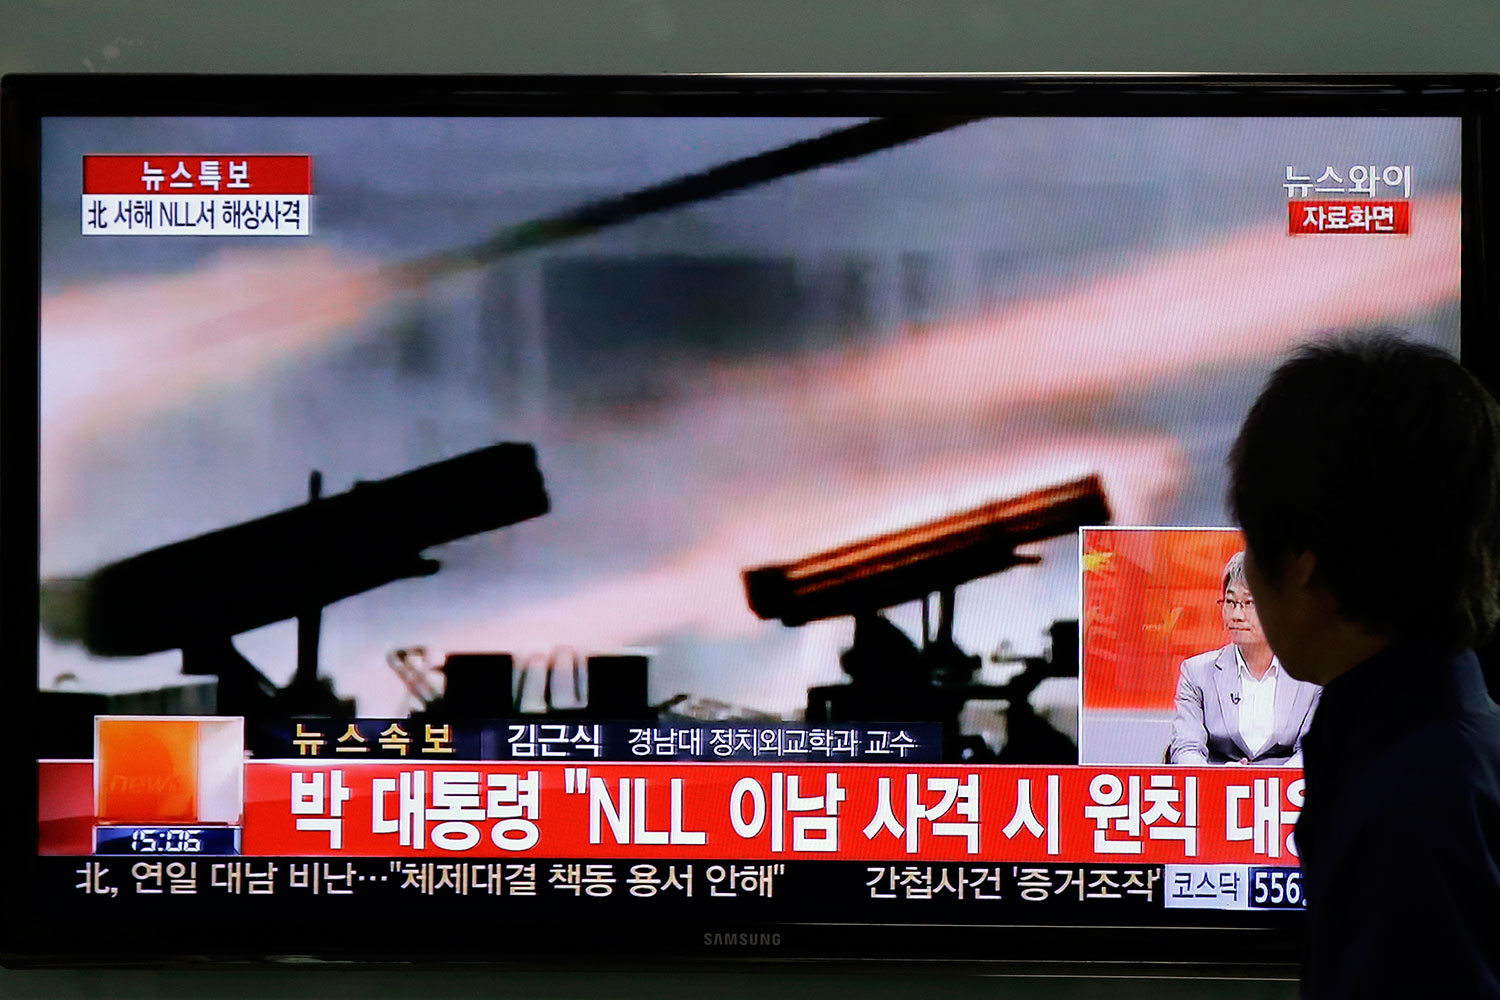 Pyongyang realiza ejercicios militares con municiones reales en la frontera con Corea del Sur